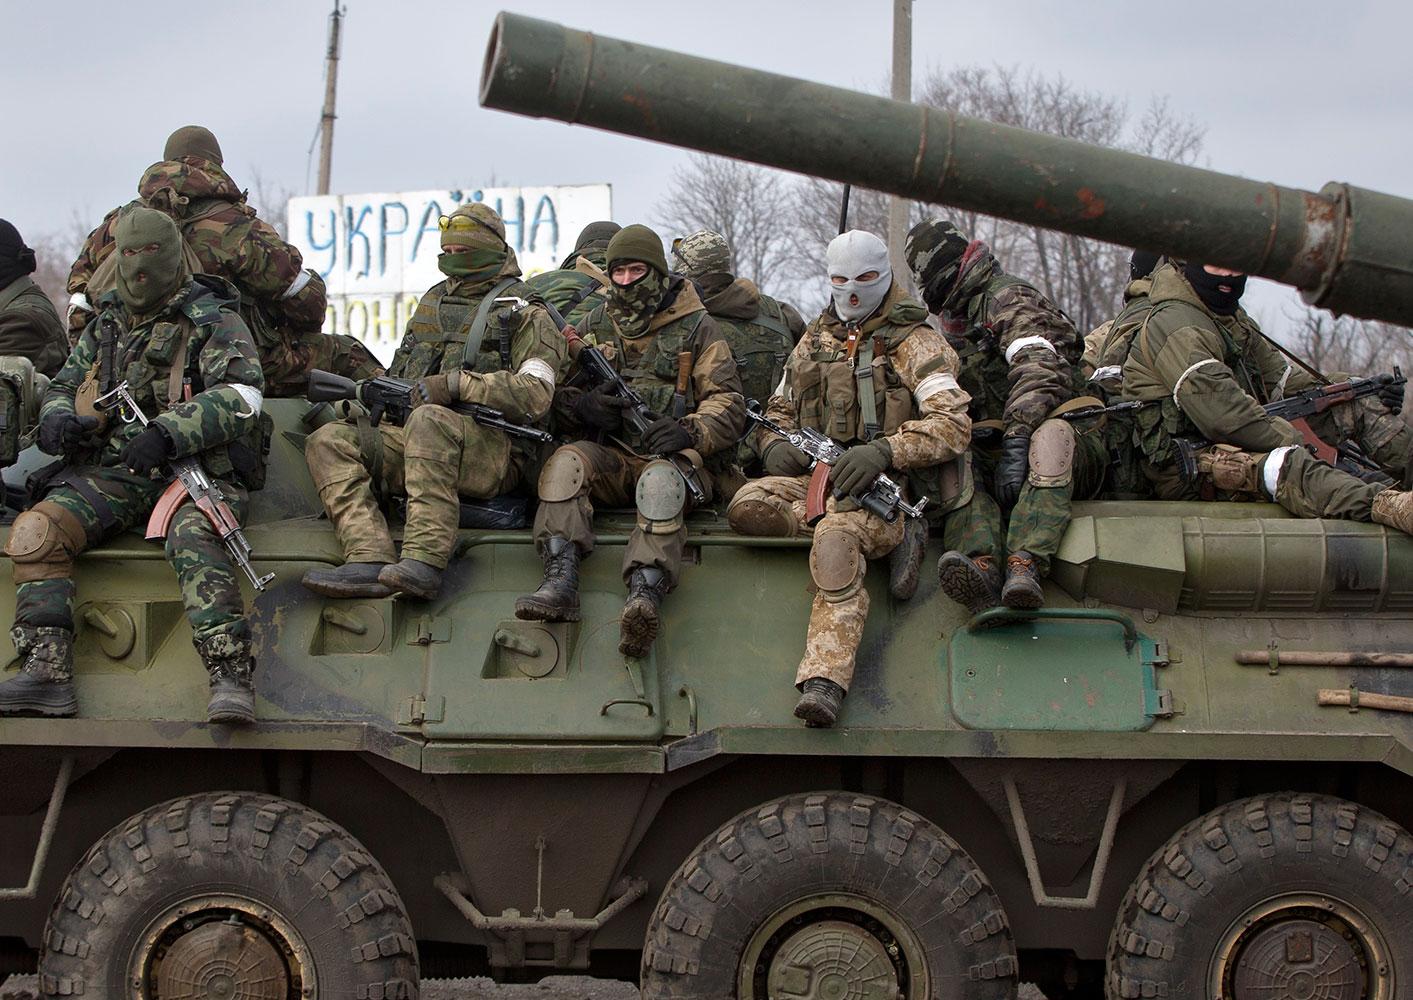 Proryska separatister i Debaltseve i östra Ukraina.